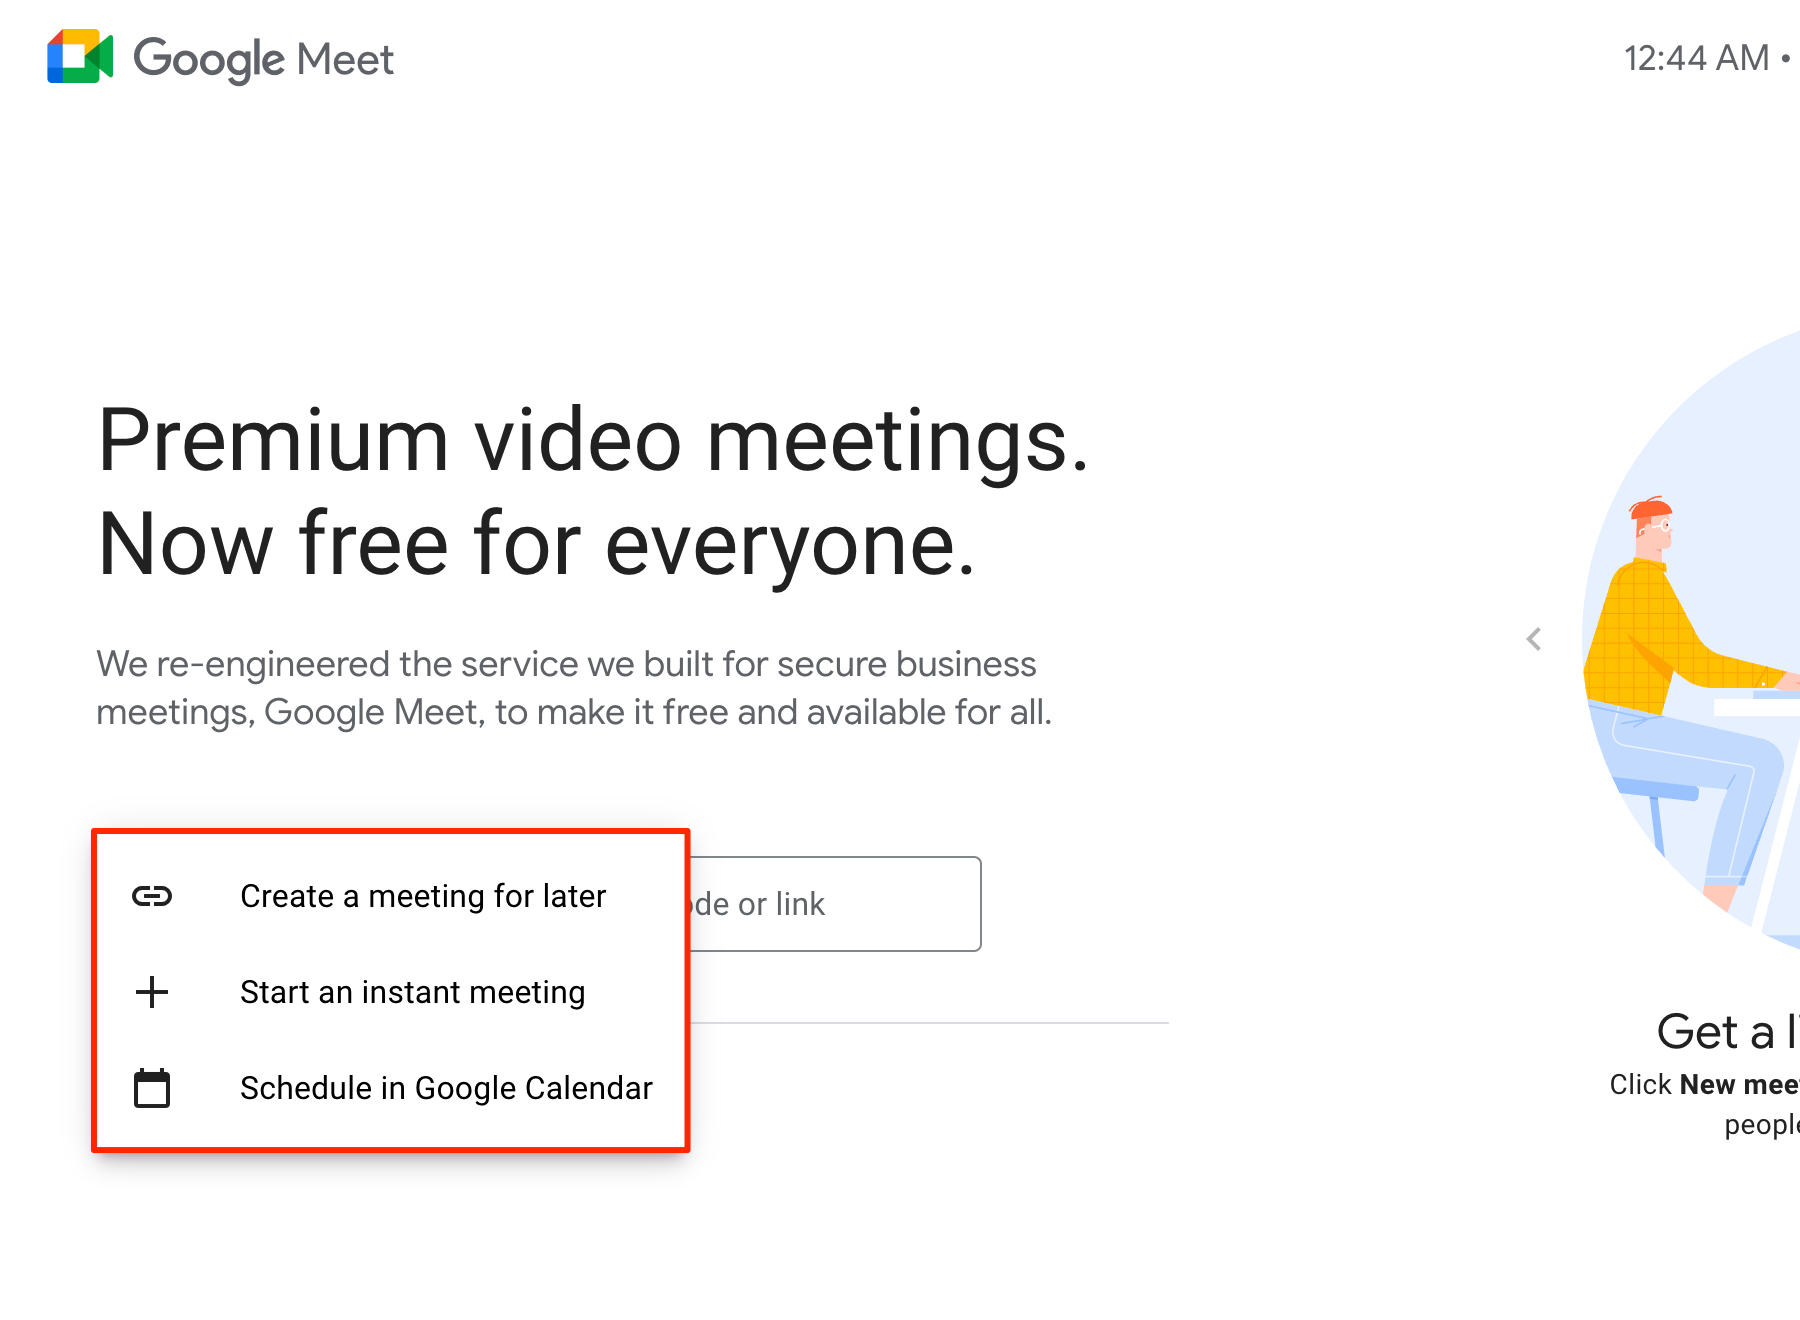 start an instant meeting in Google Meet